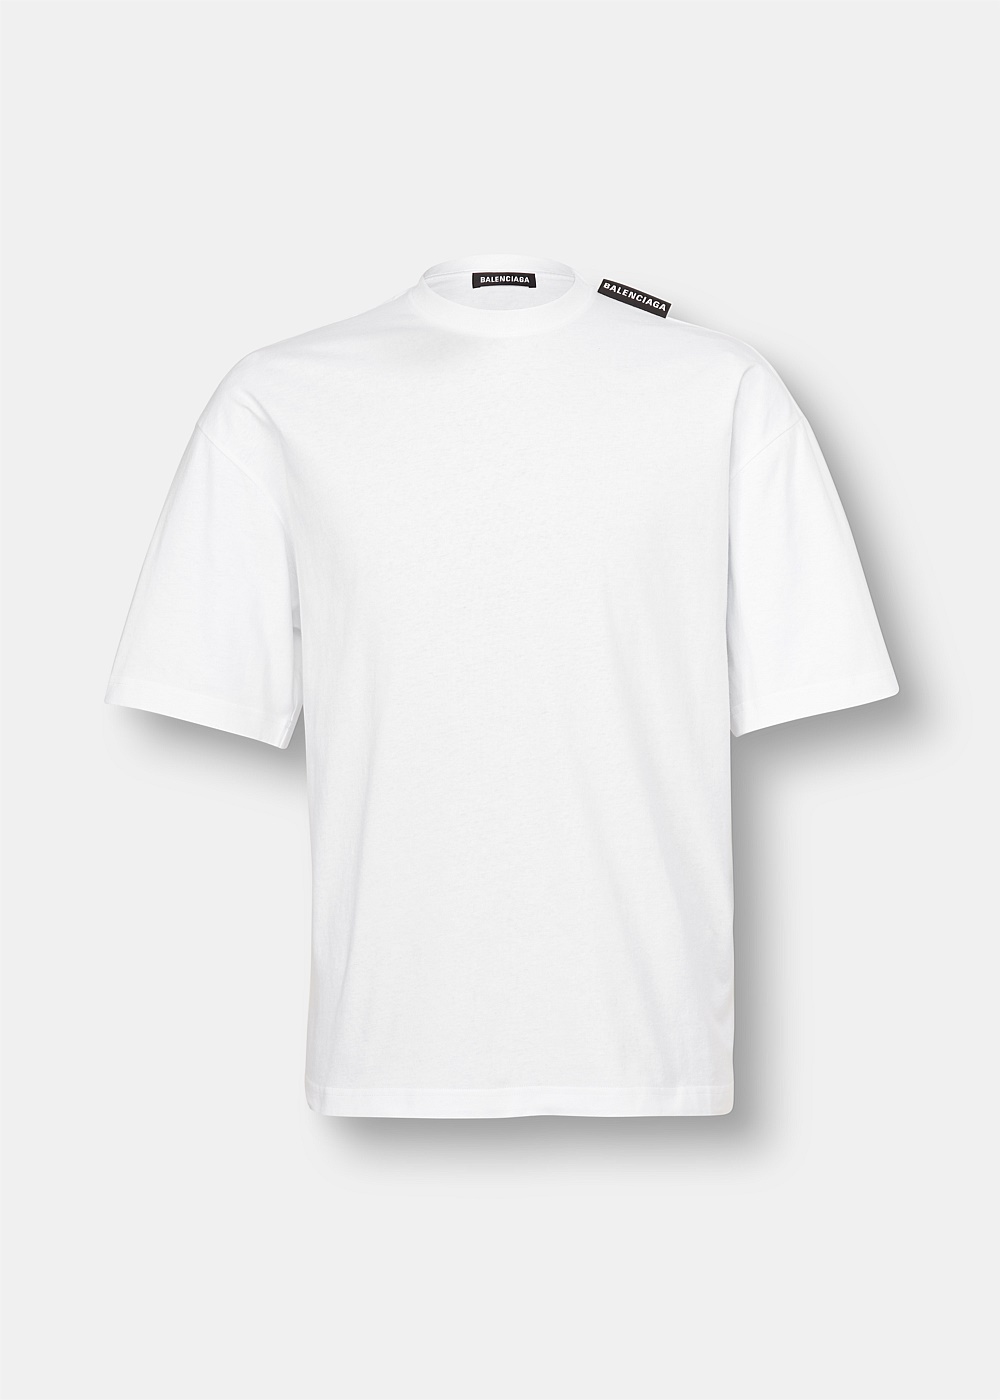 Balenciaga Tshirt Medium Fit in White  Balenciaga US